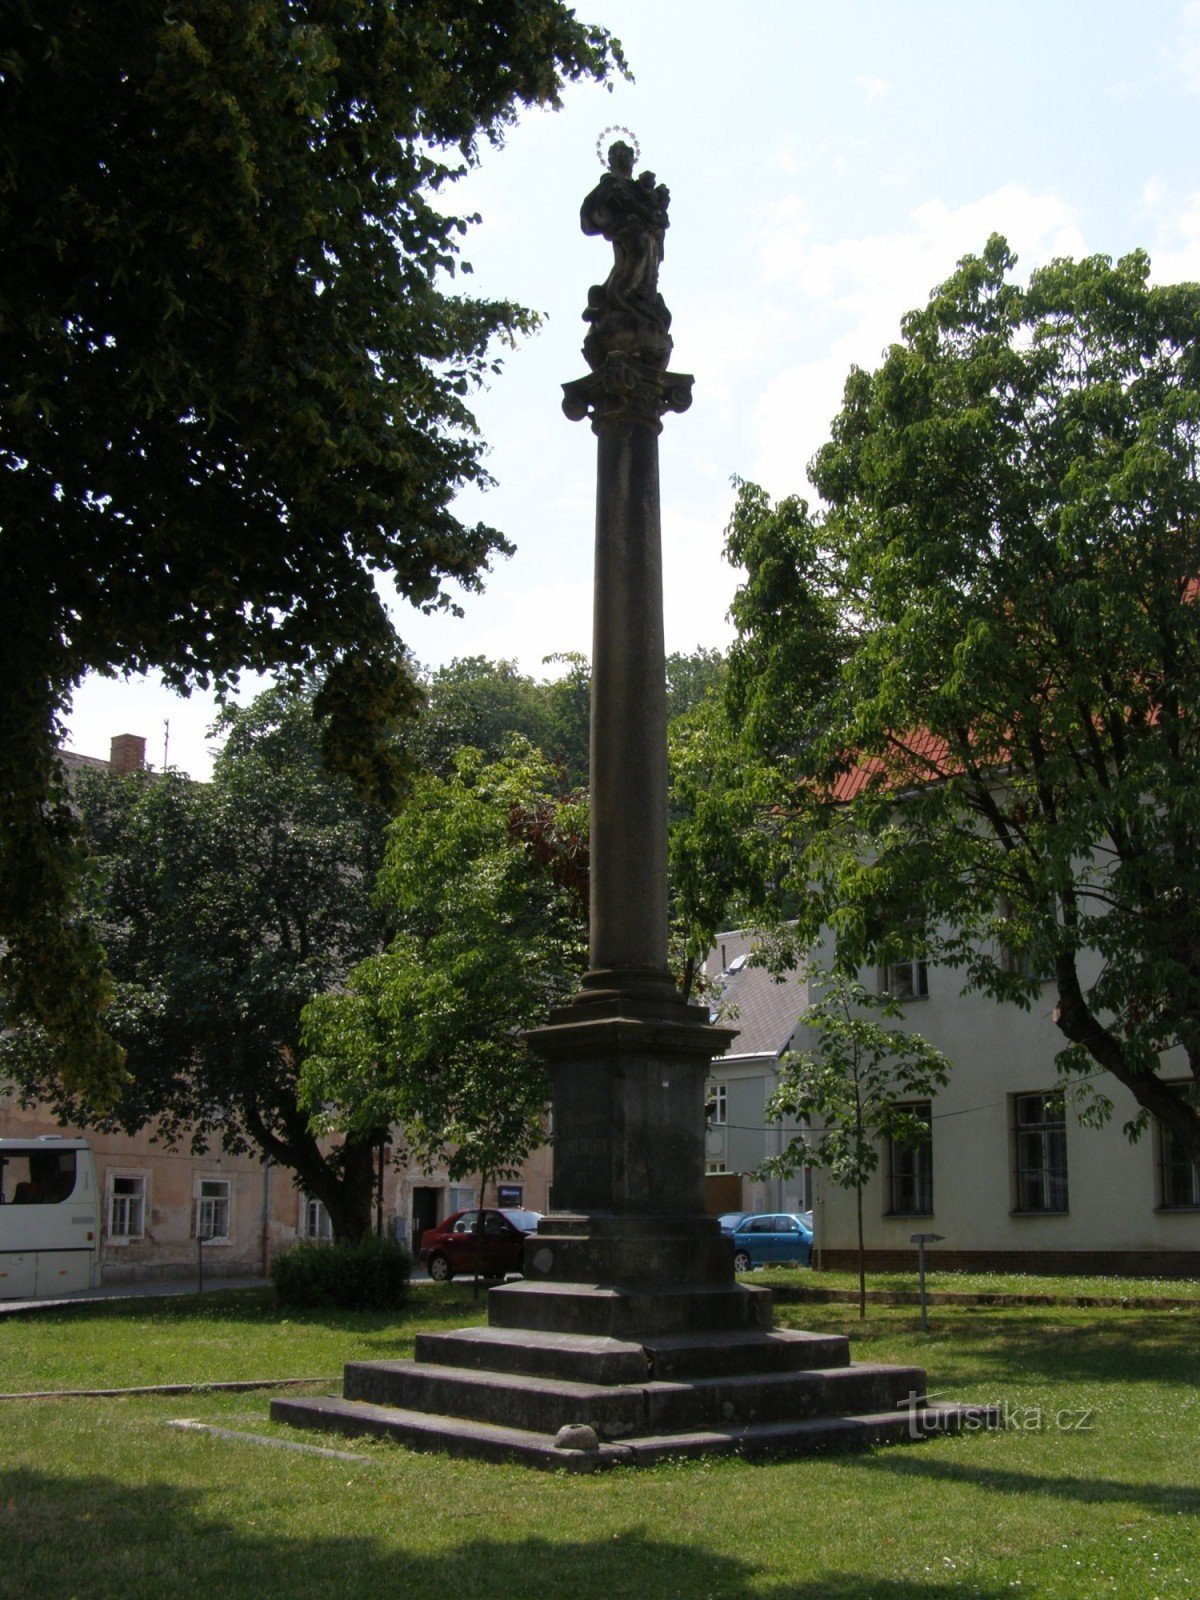 Ahorntræ - en søjle med en statue af Vor Frue